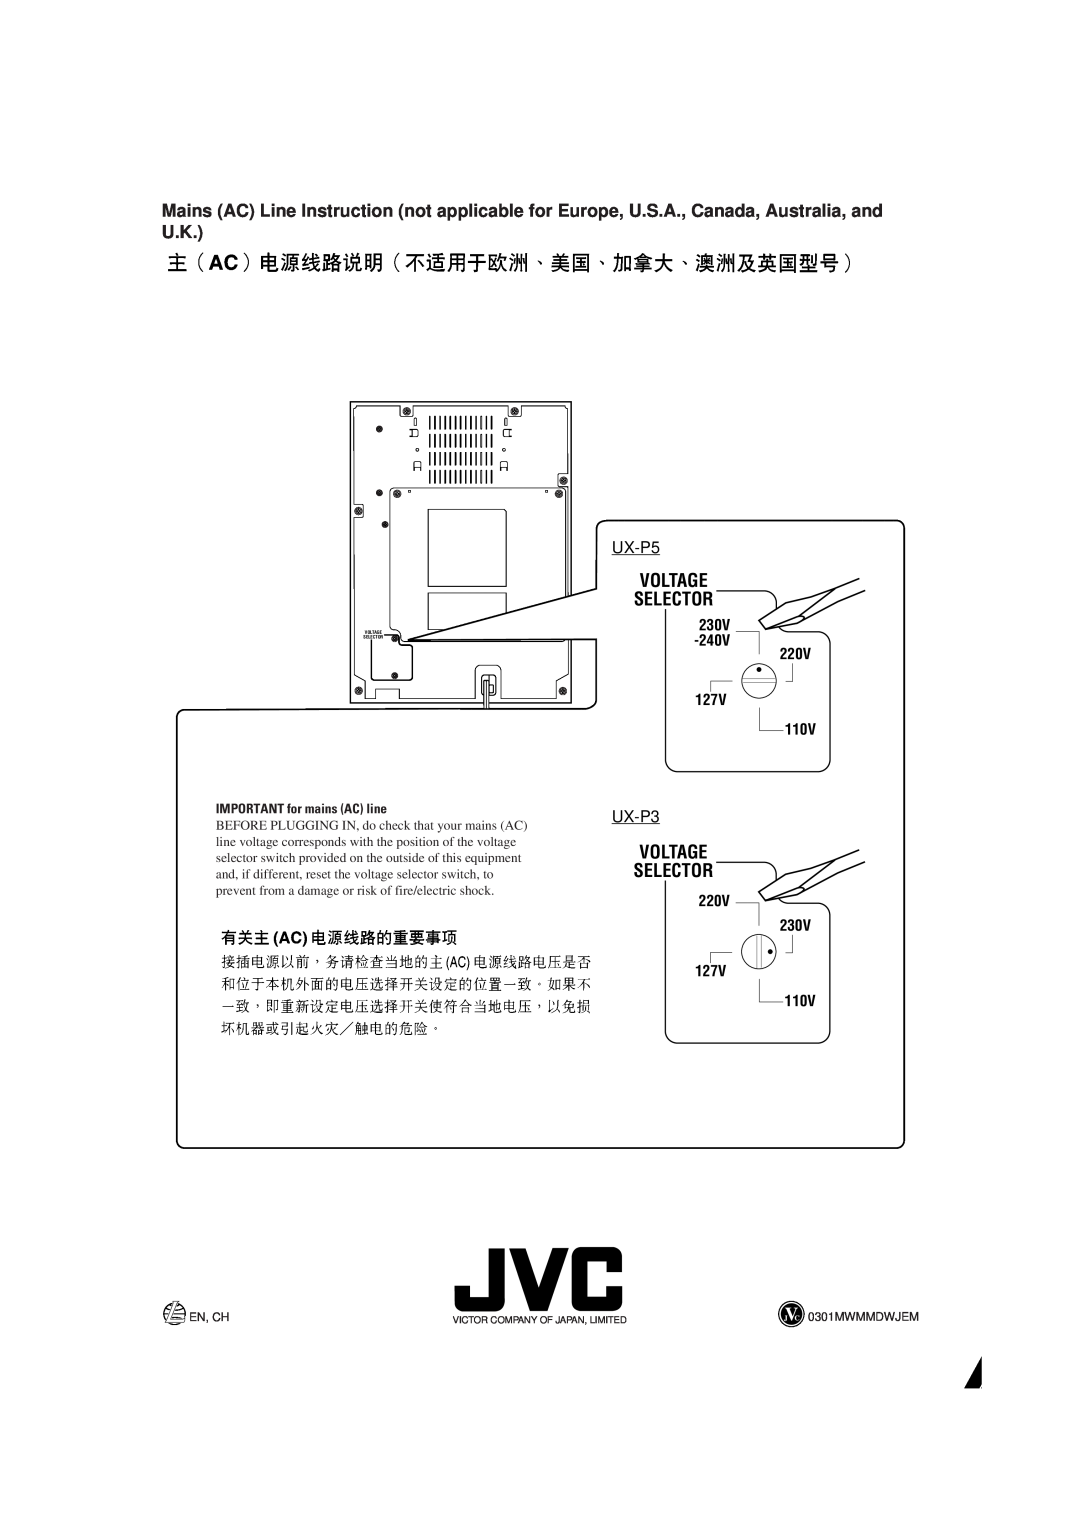 JVC UX-P5/UX-P3 manual 220V, 230V, Voltage Selector, 127V, IMPORTANT for mains AC line 